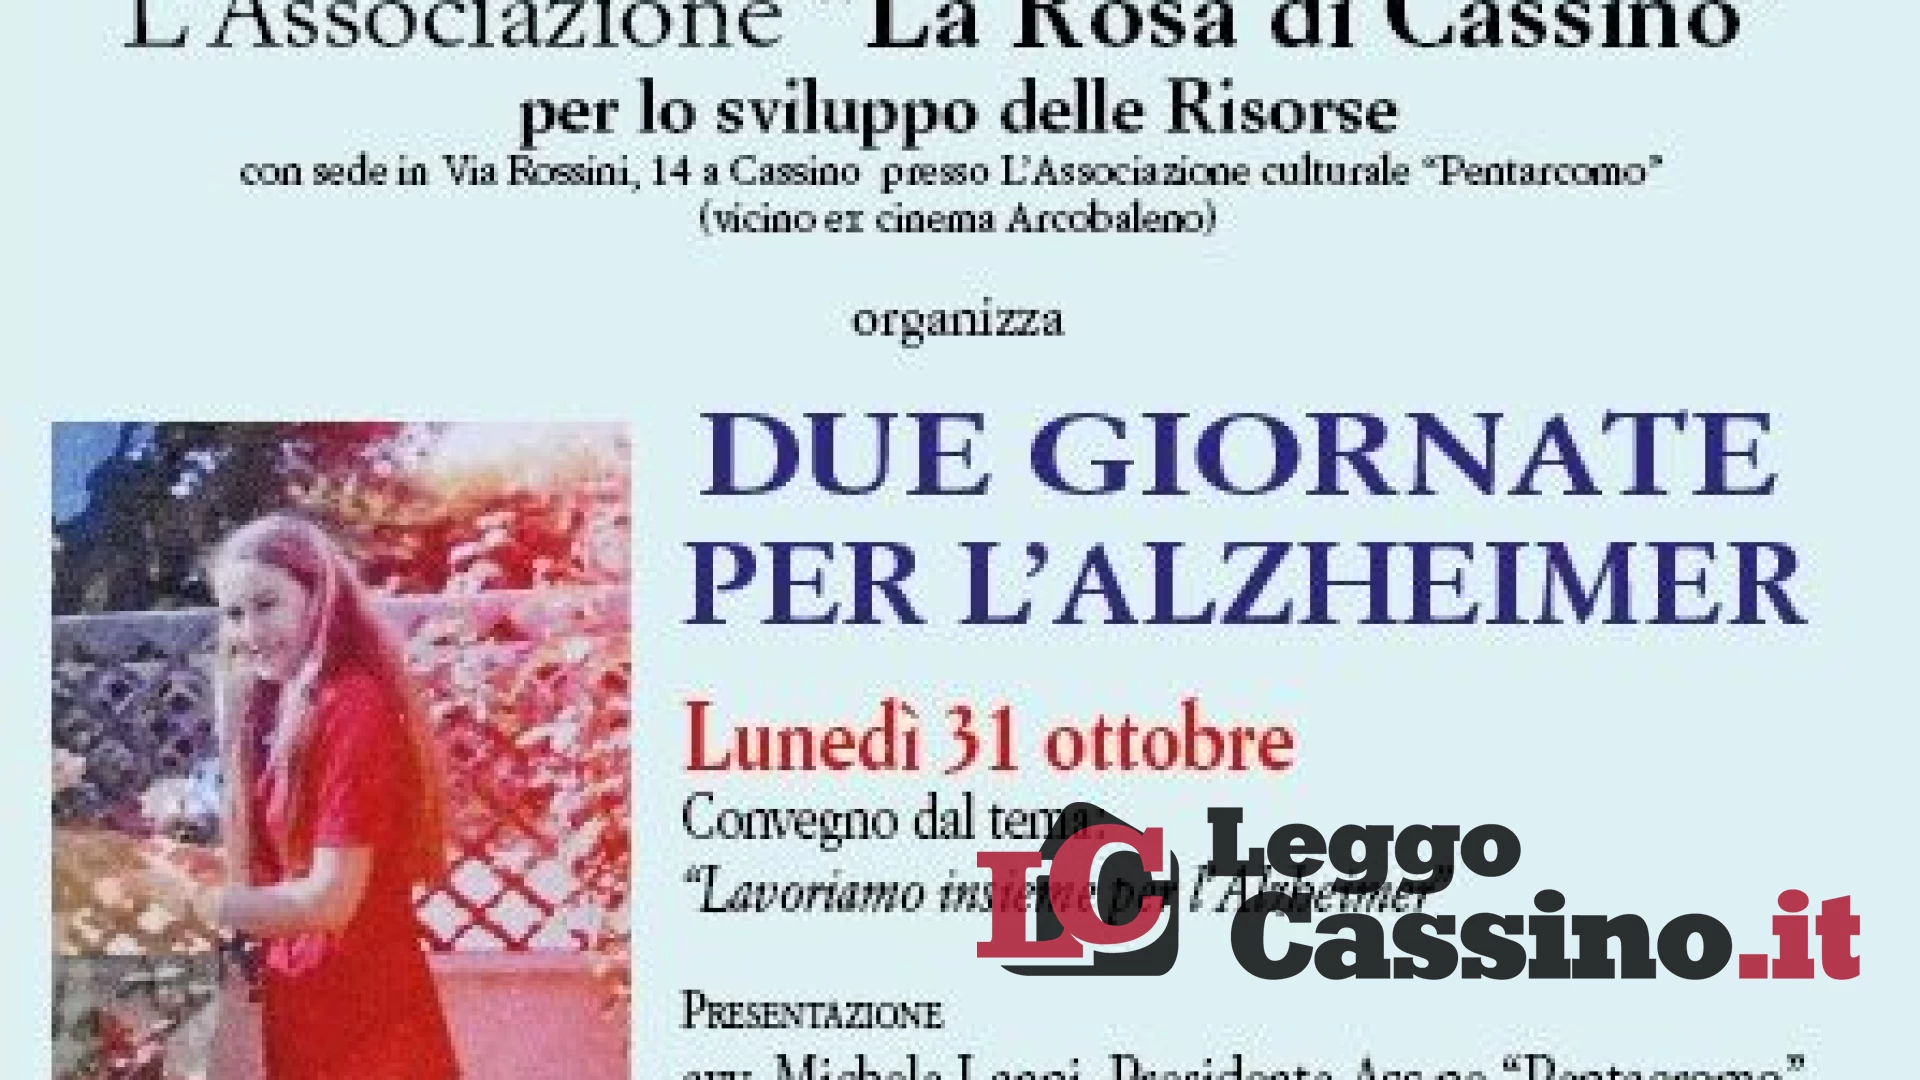 L’Associazione “La Rosa di Cassino" organizza due giornate per l’Alzheimer a Cassino